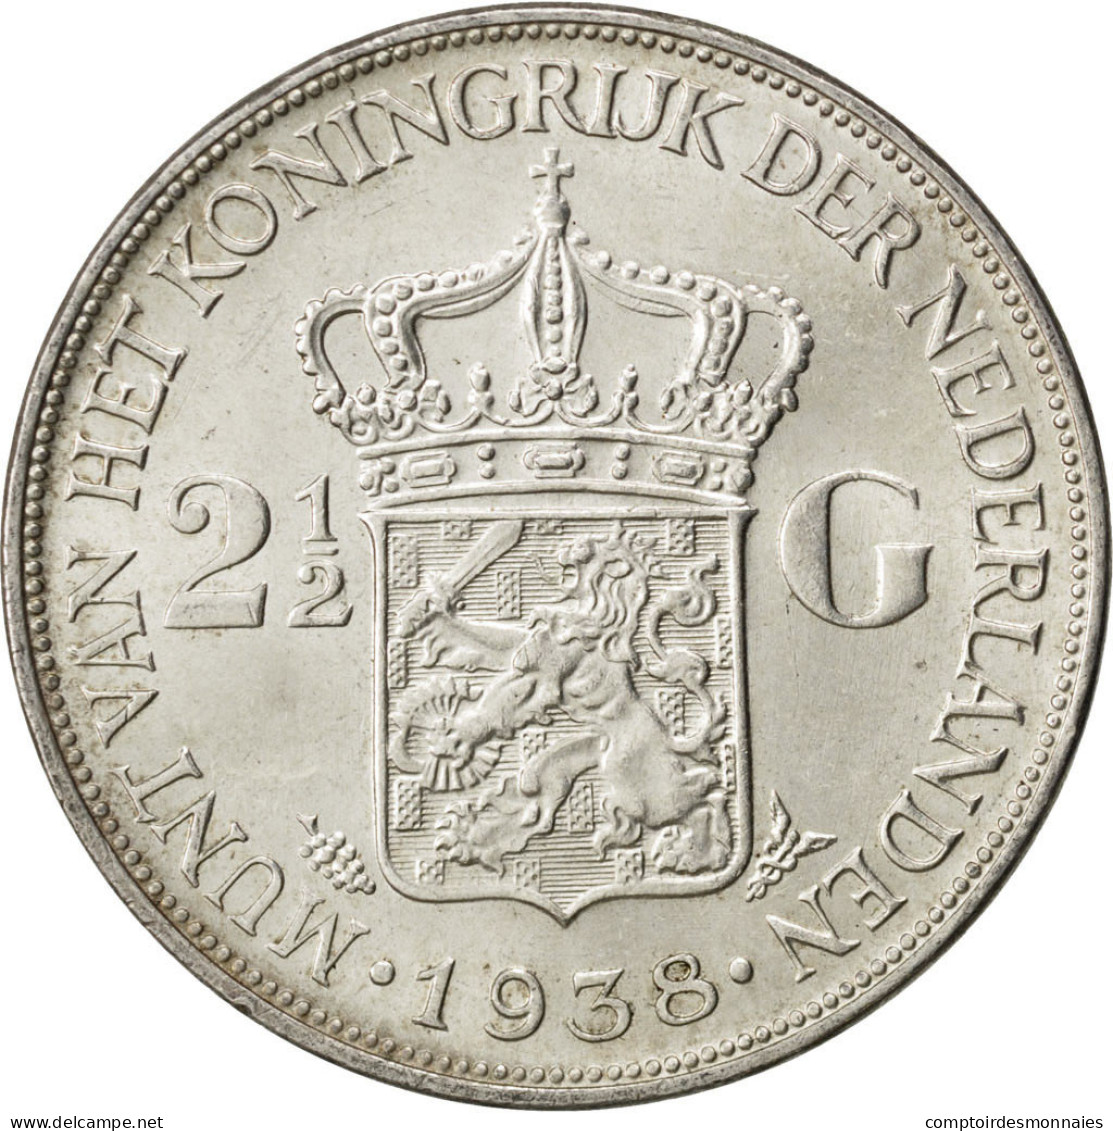 Monnaie, Pays-Bas, Wilhelmina I, 2-1/2 Gulden, 1938, SUP, Argent, KM:165 - 2 1/2 Florín Holandés (Gulden)